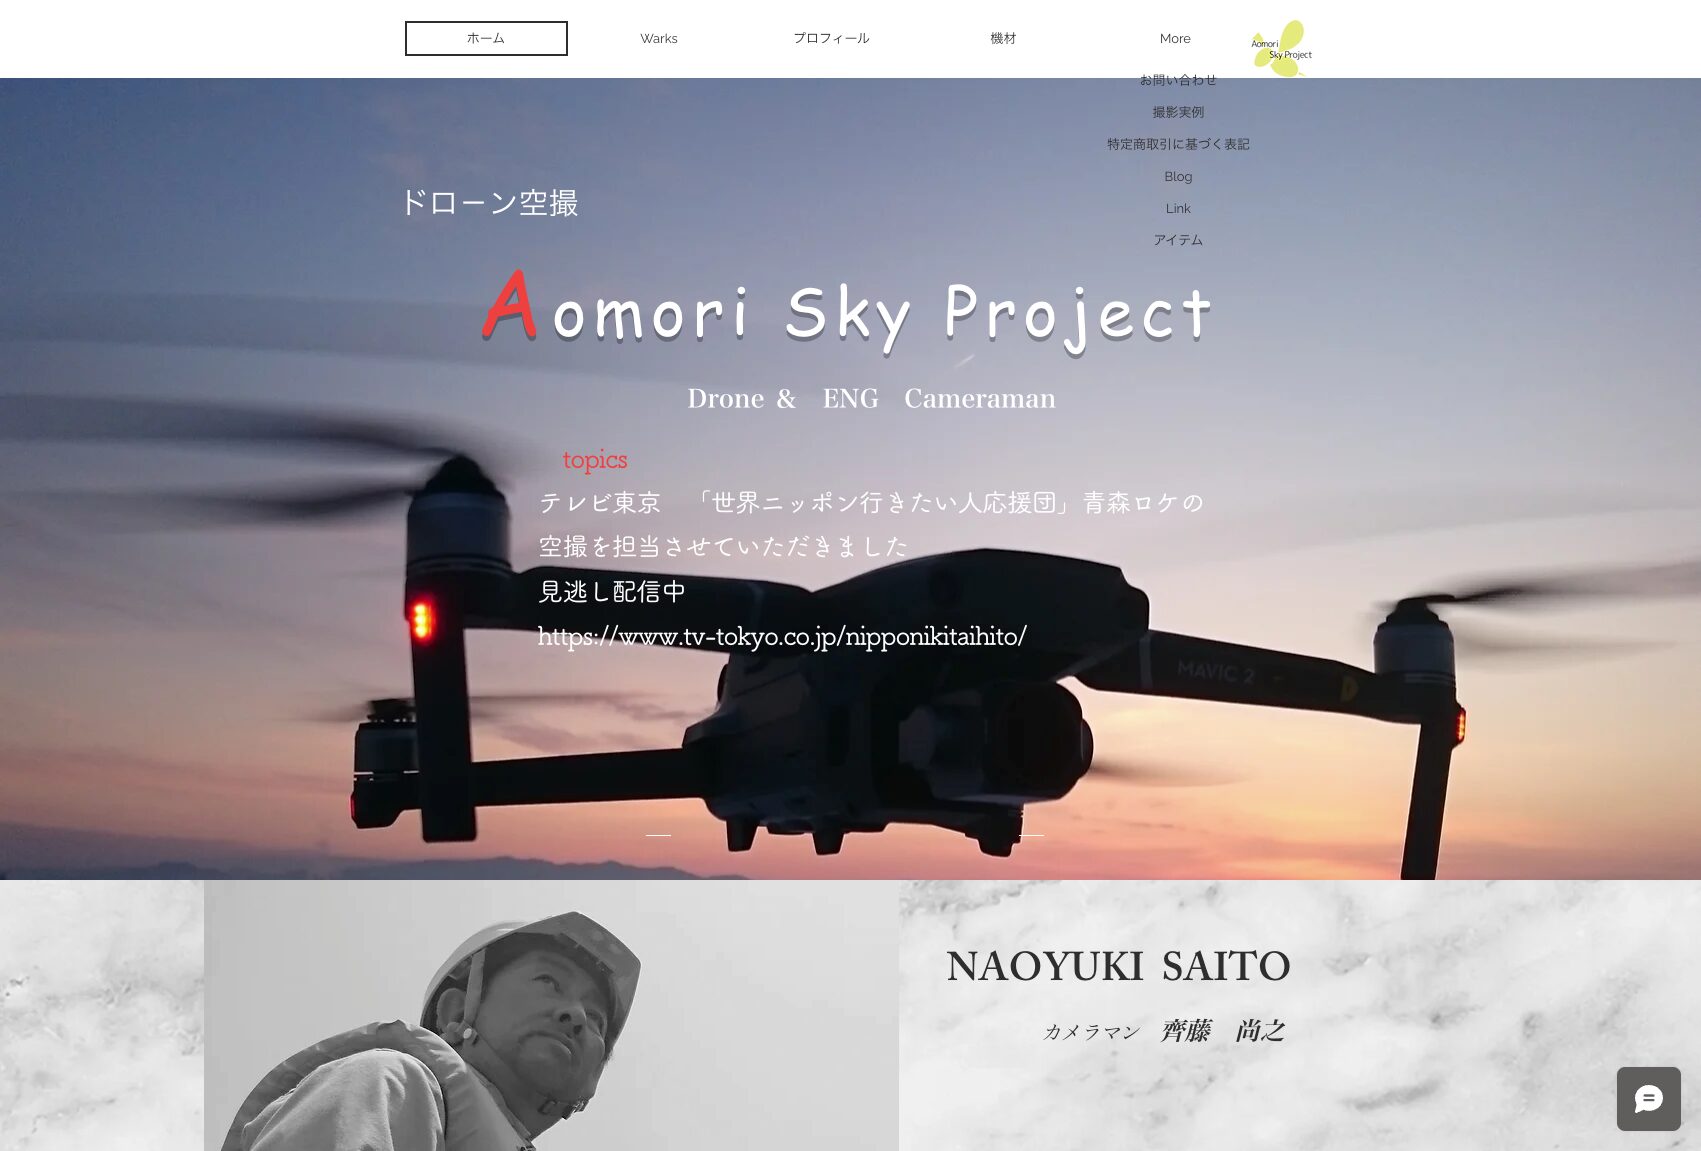 Aomori Sky Project